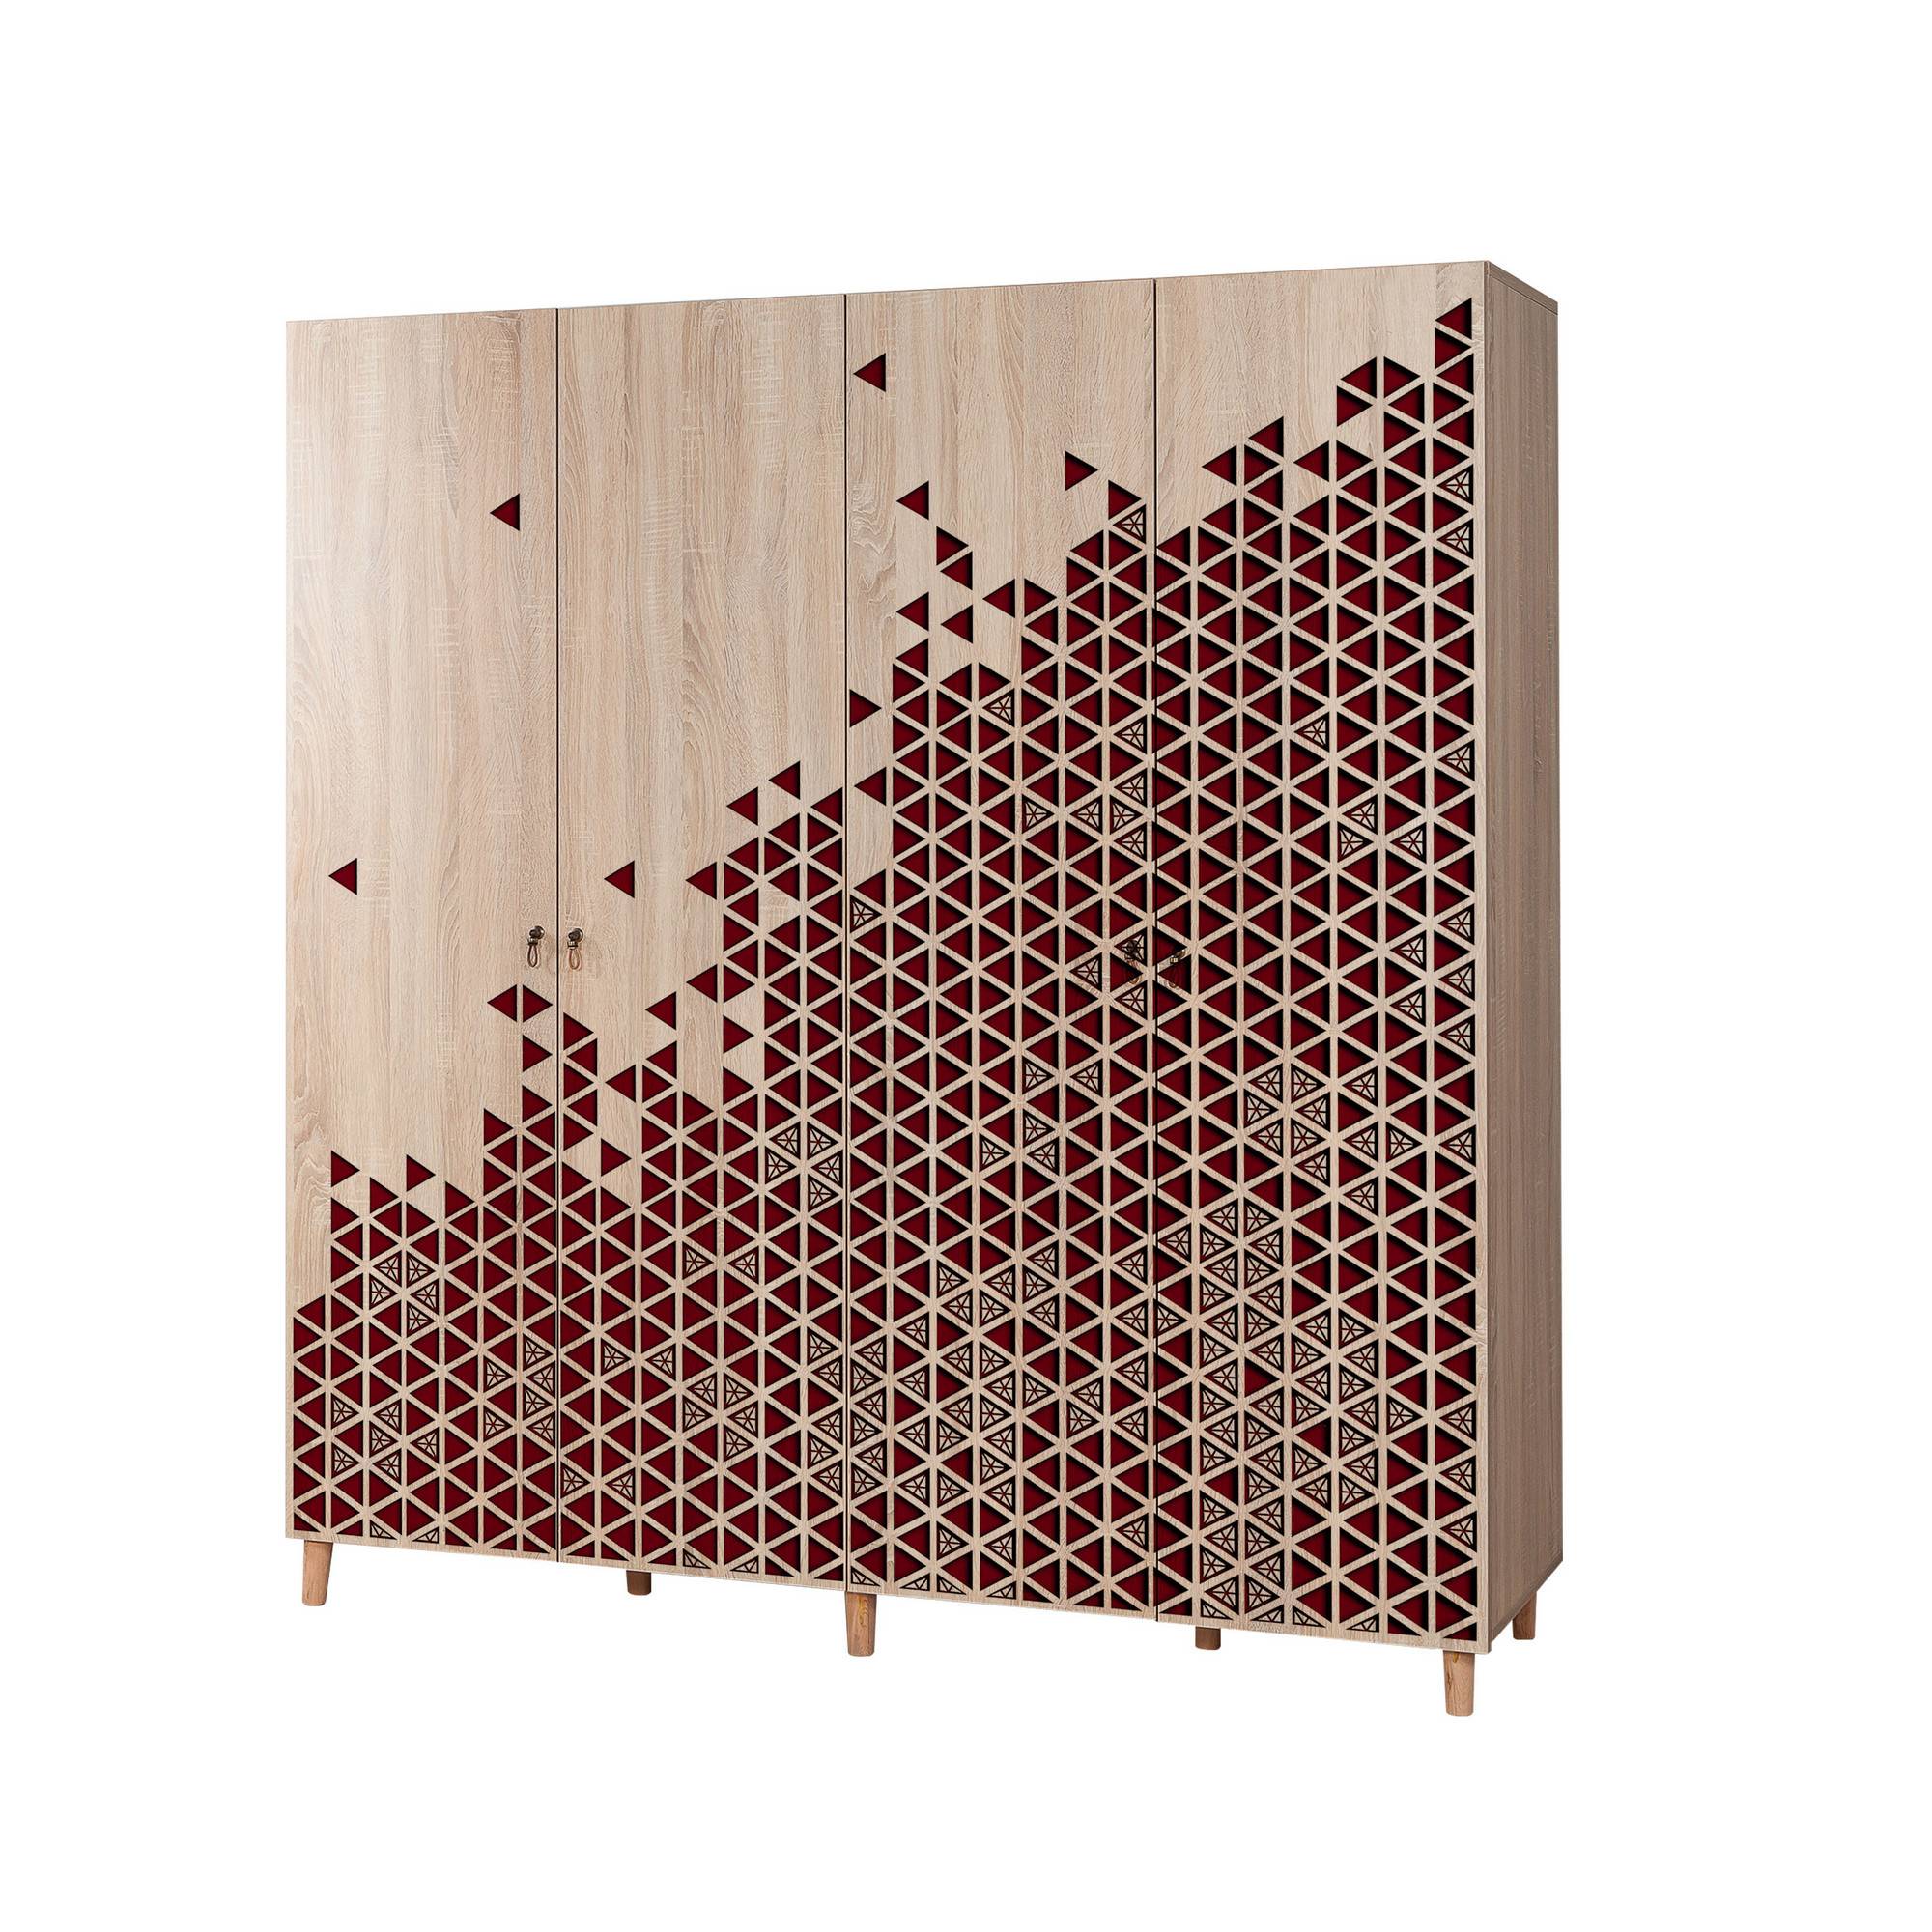 Infigo 4-deurs kast 180cm Natuurlijk hout Driehoek motief Bordeaux